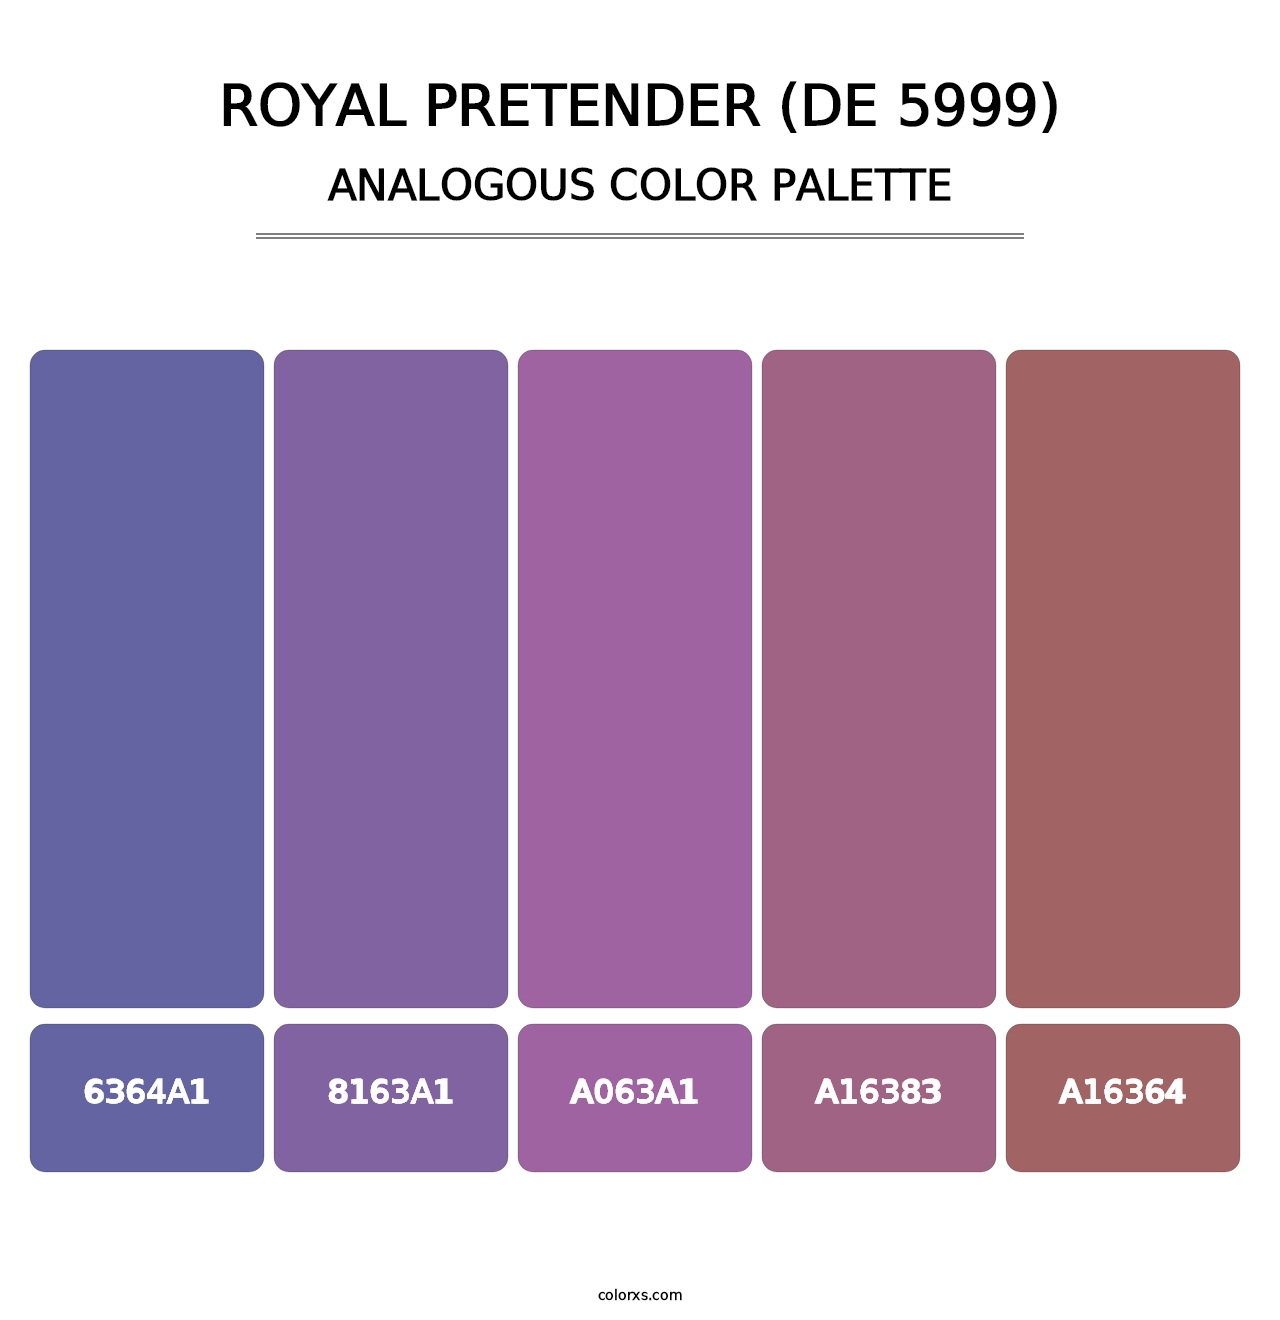 Royal Pretender (DE 5999) - Analogous Color Palette